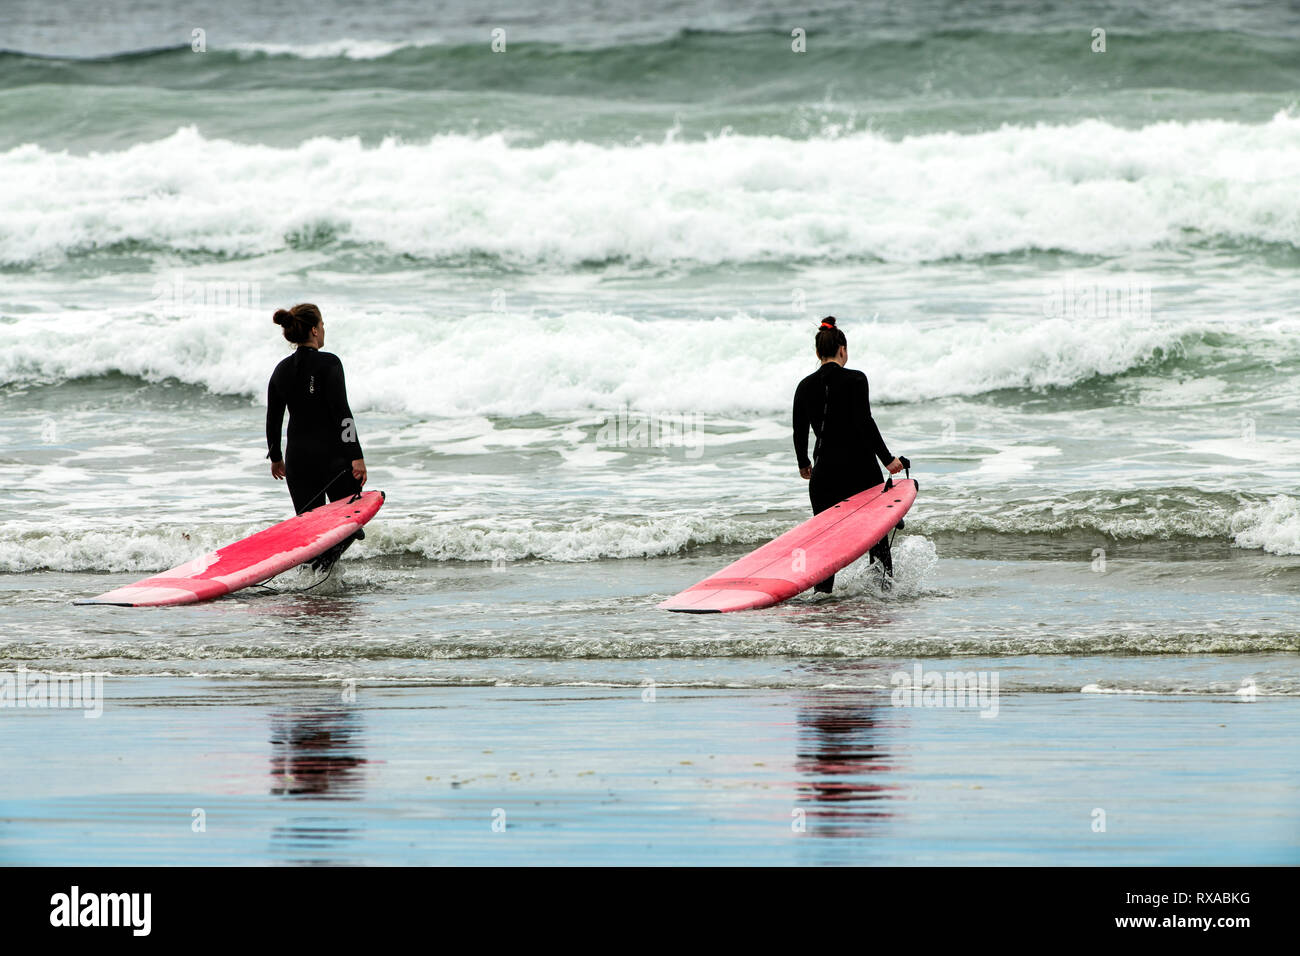 Surfers, Cox Bay, Tofino, BC, Canada Stock Photo